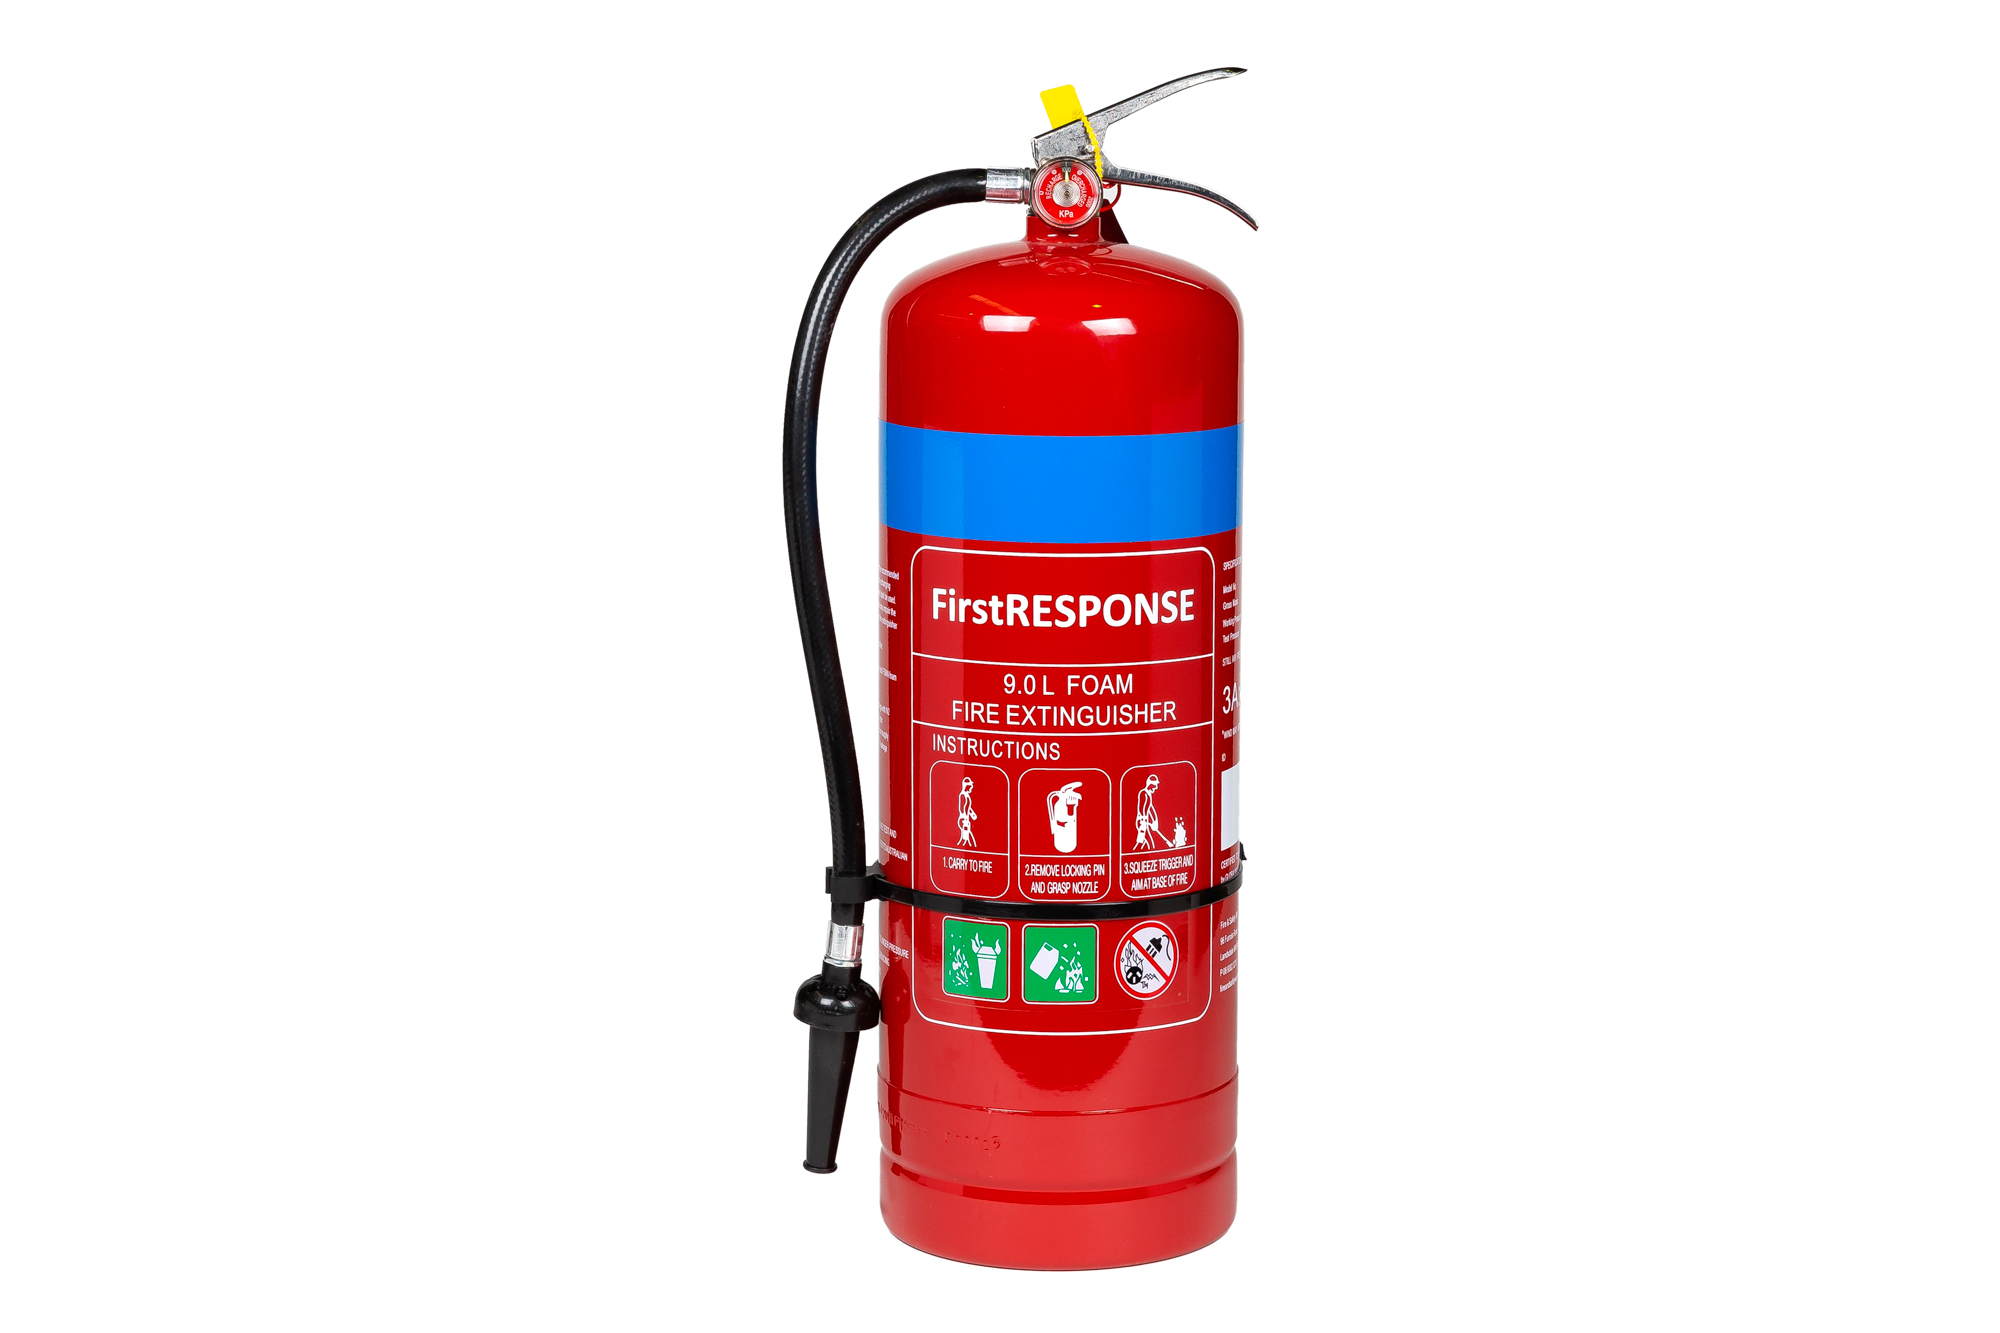 Fire Extinguisher Design Standards - Design Talk